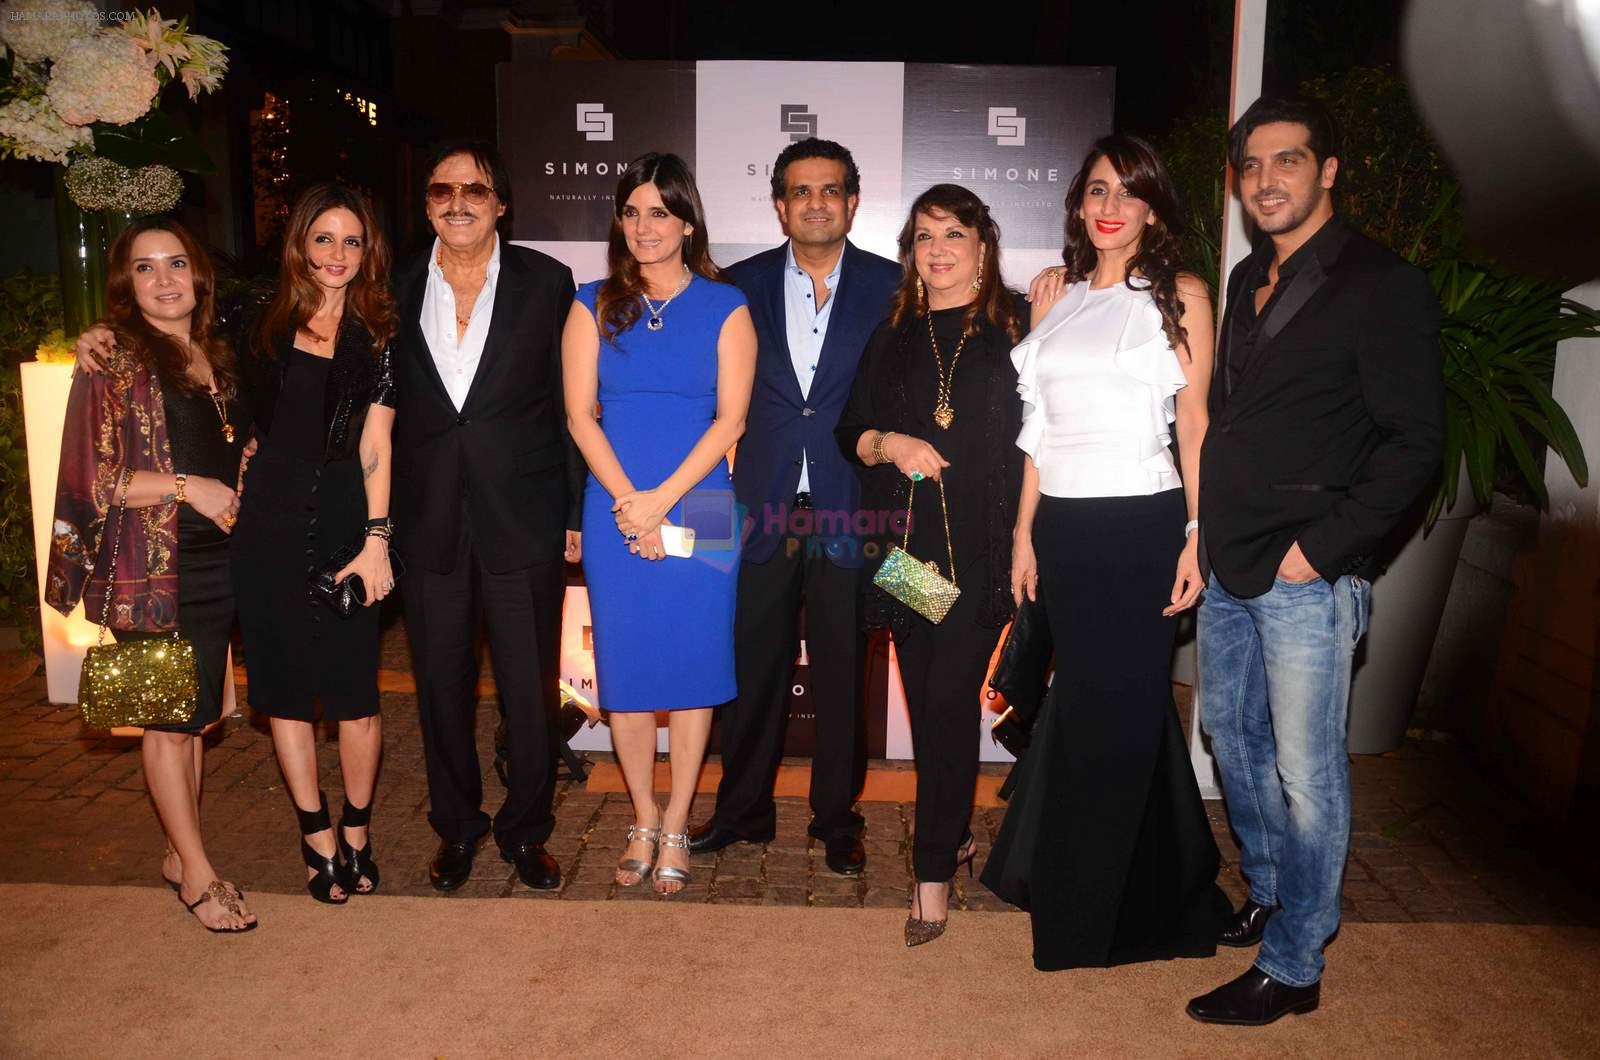 Sussanne Khan, Sanjay Khan, Zarine Khan, Farah Ali Khan, Zayed Khan at Simone anniversary in Mumbai on 26th Sept 2015